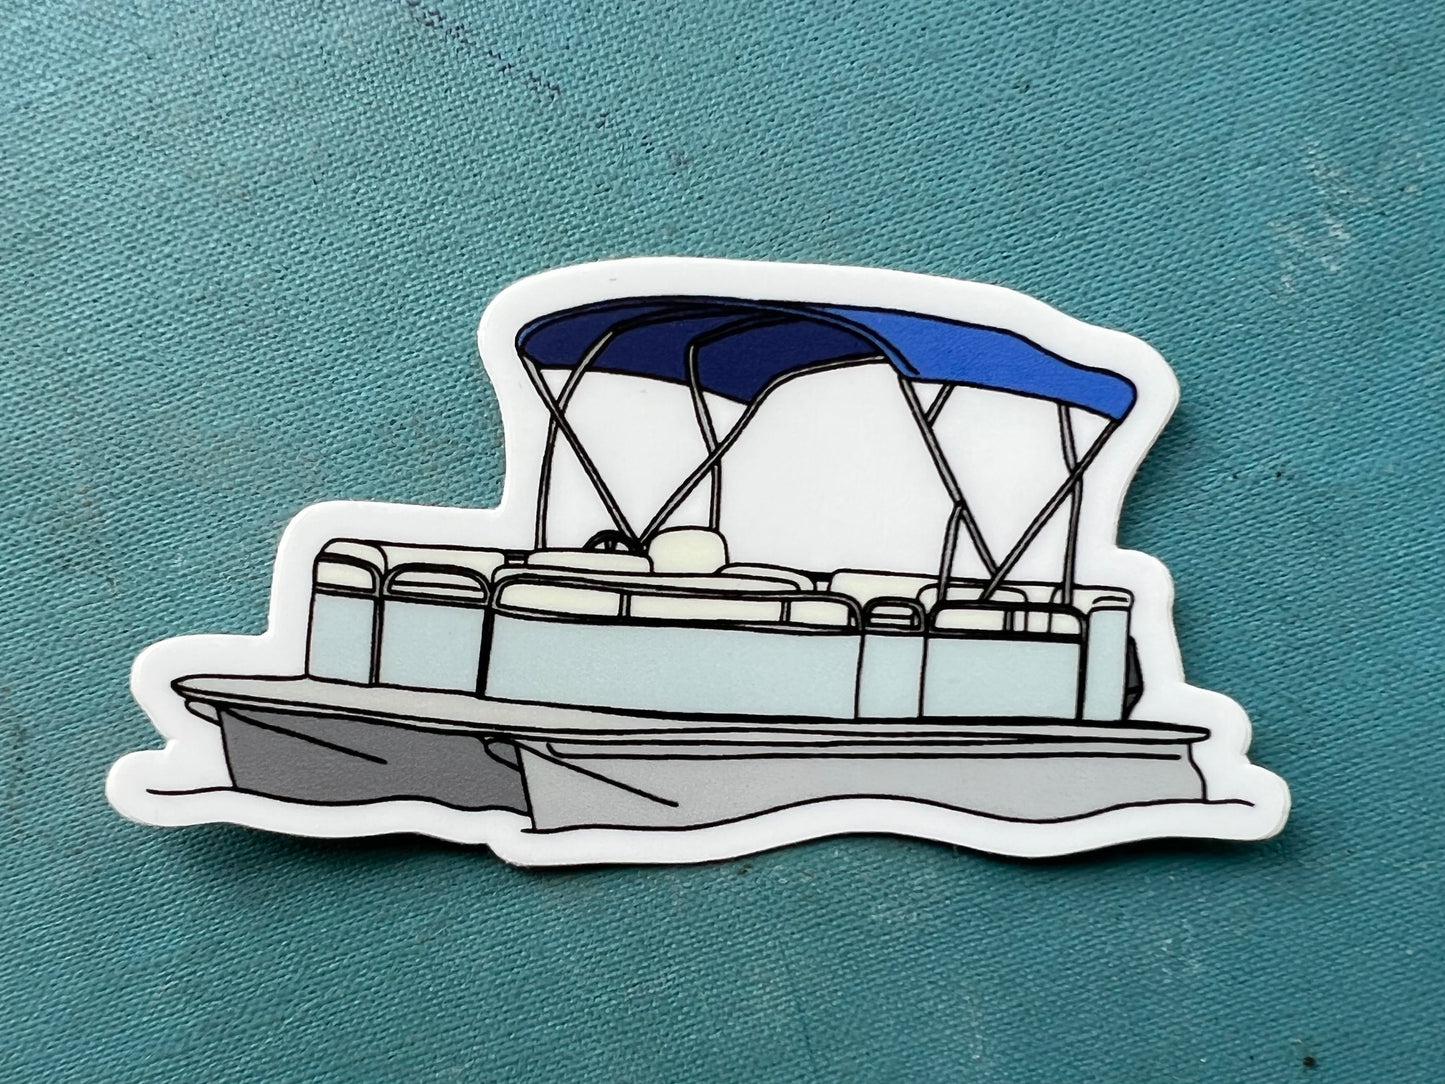 Pontoon Boat Sticker